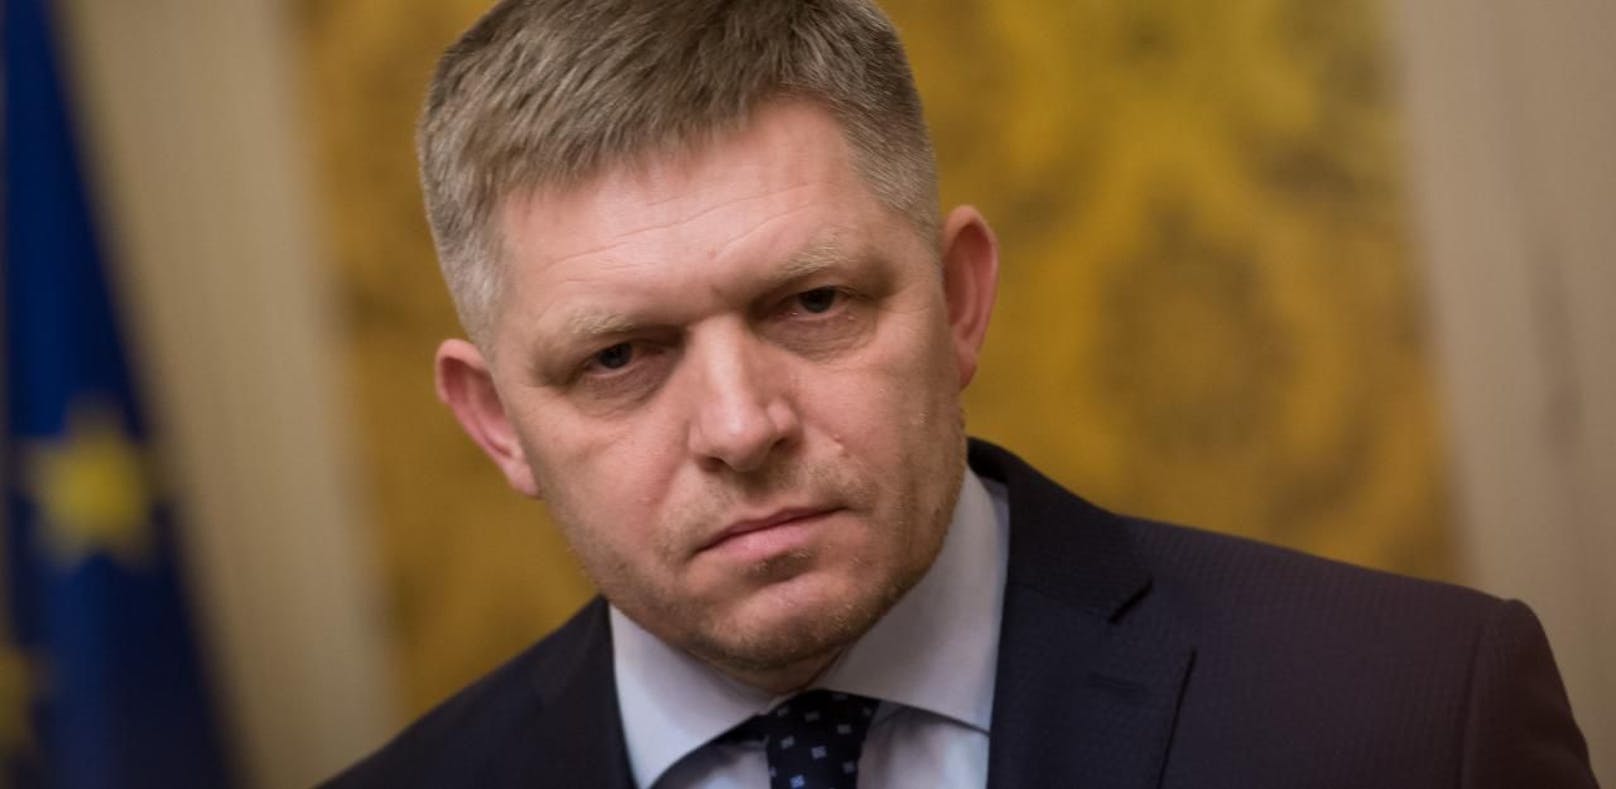 Slowakischer Premier Fico bietet Rücktritt an